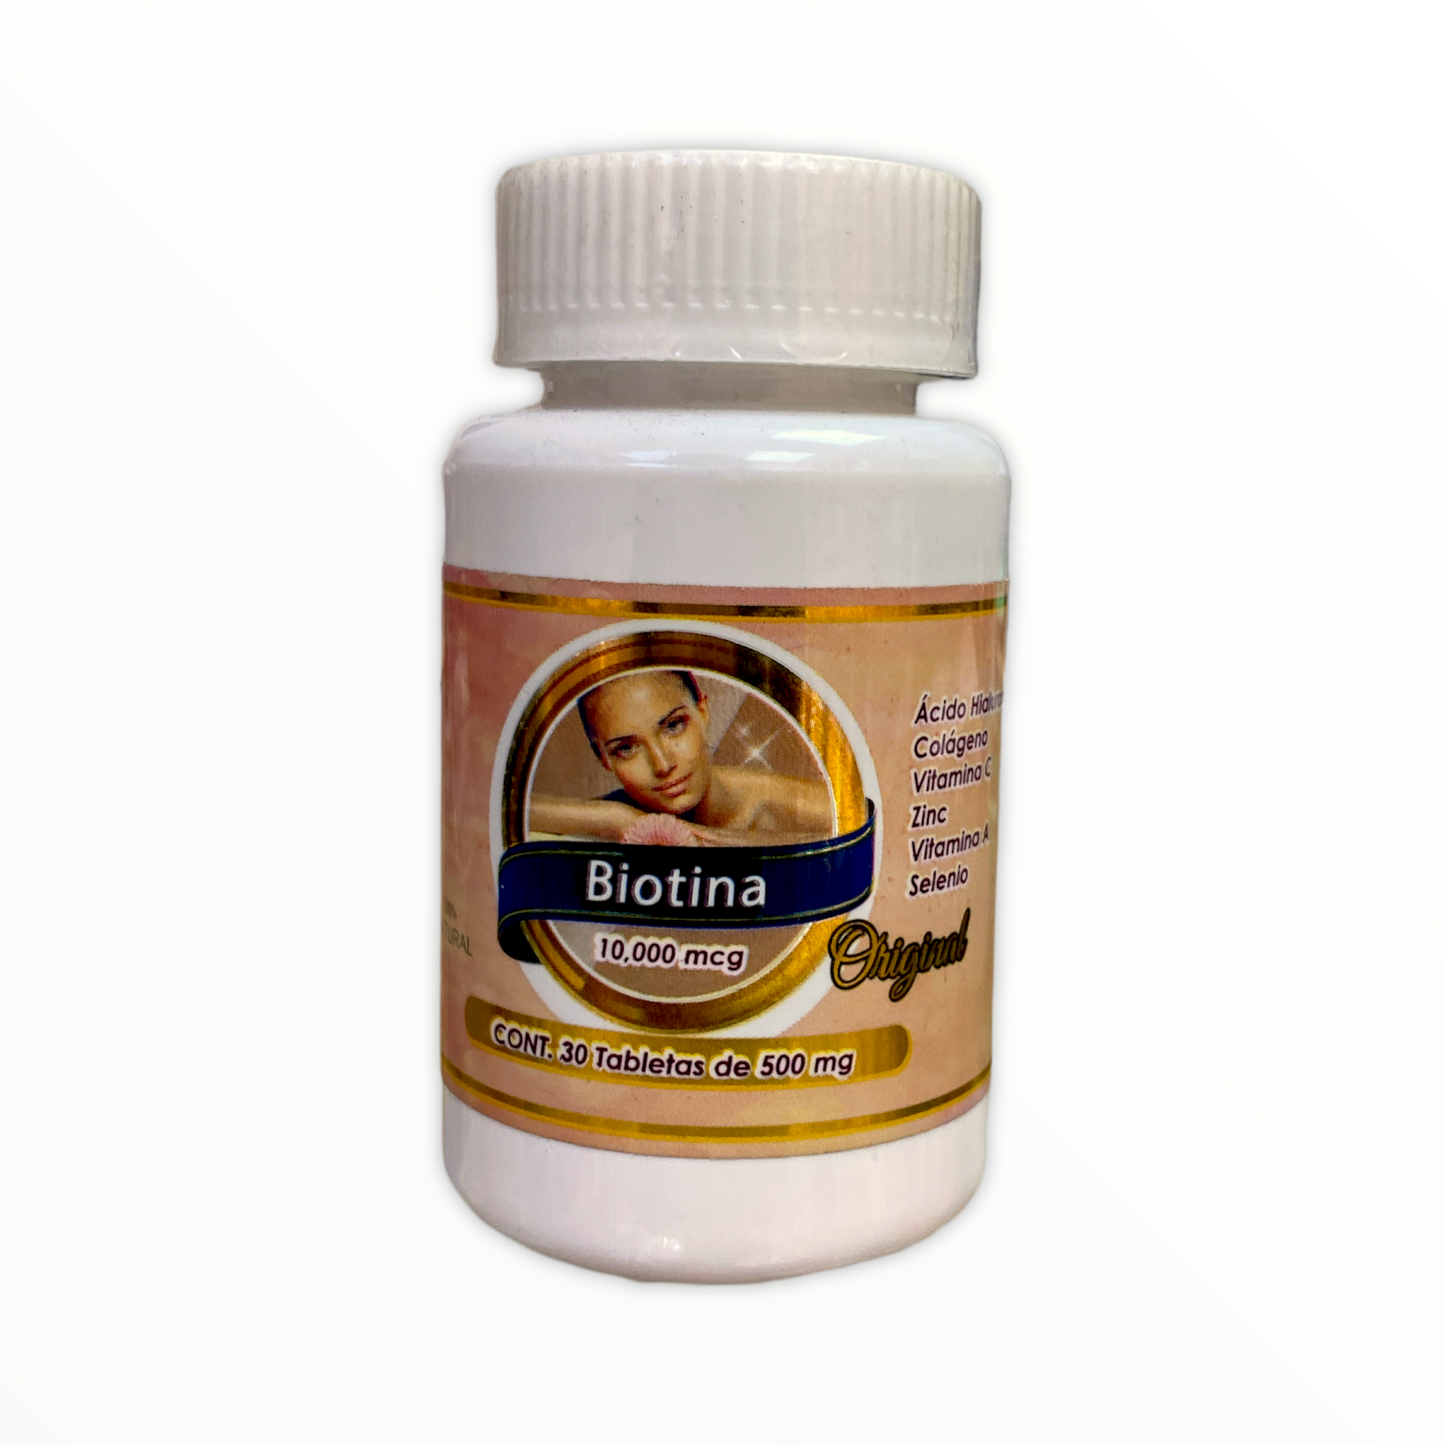 Biotina 10,000 mcg 30 tabletas Evolución Natural